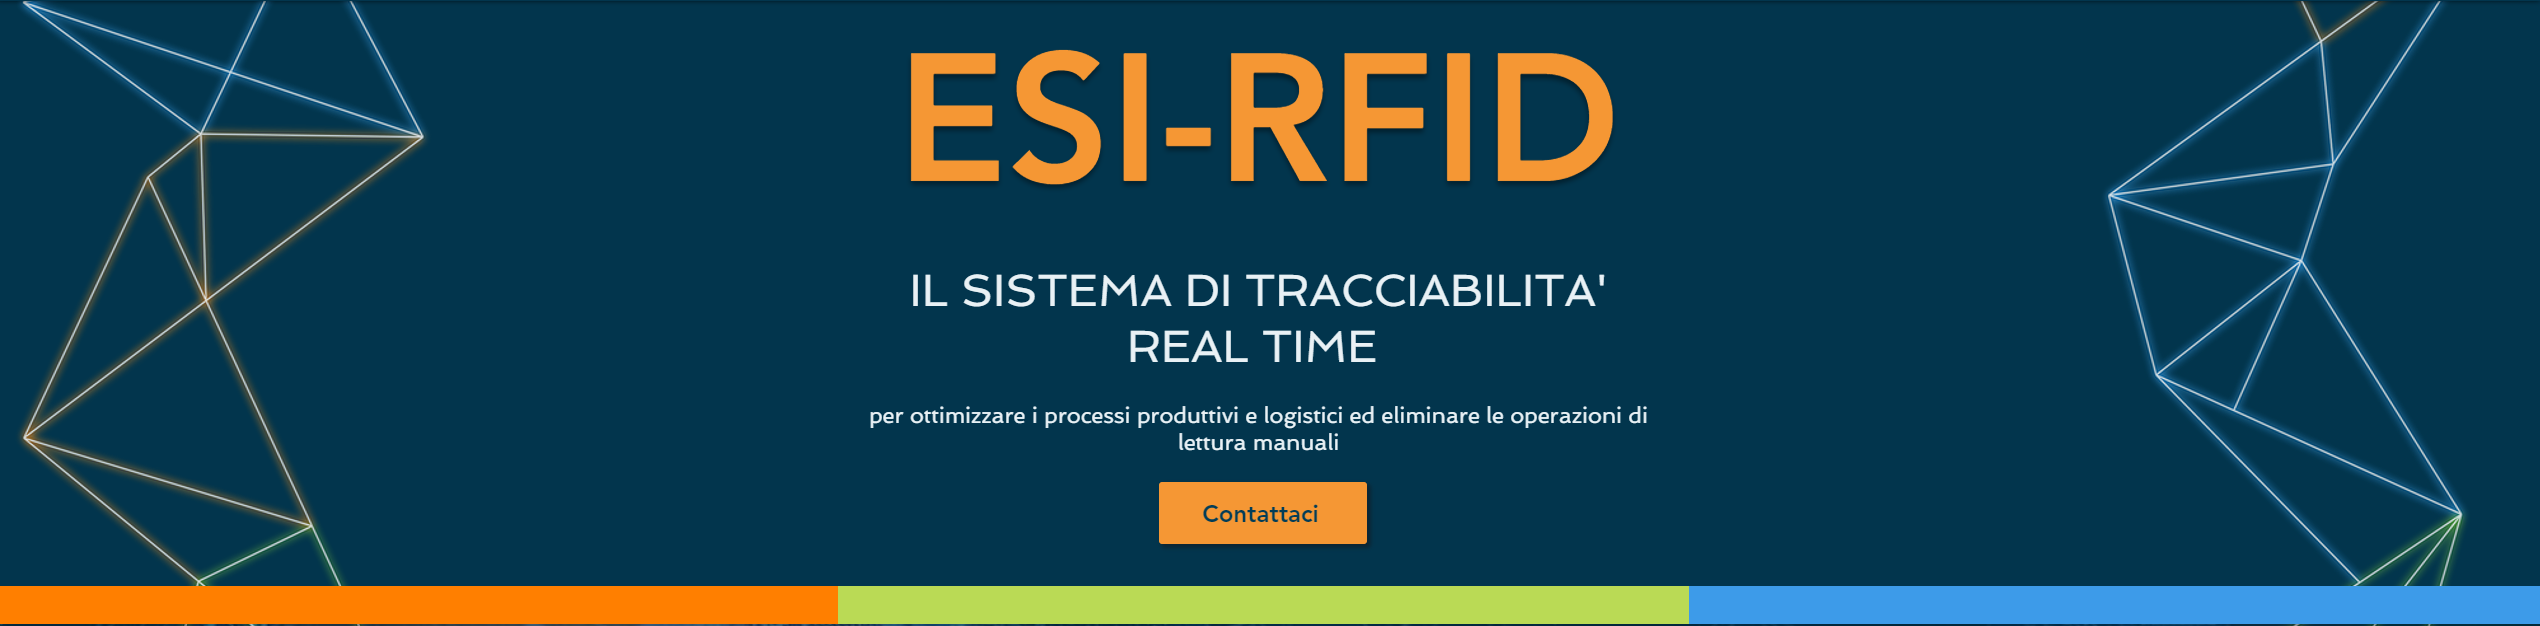 ESI-RFID - Il Sistema di Tracciabilità Real Time